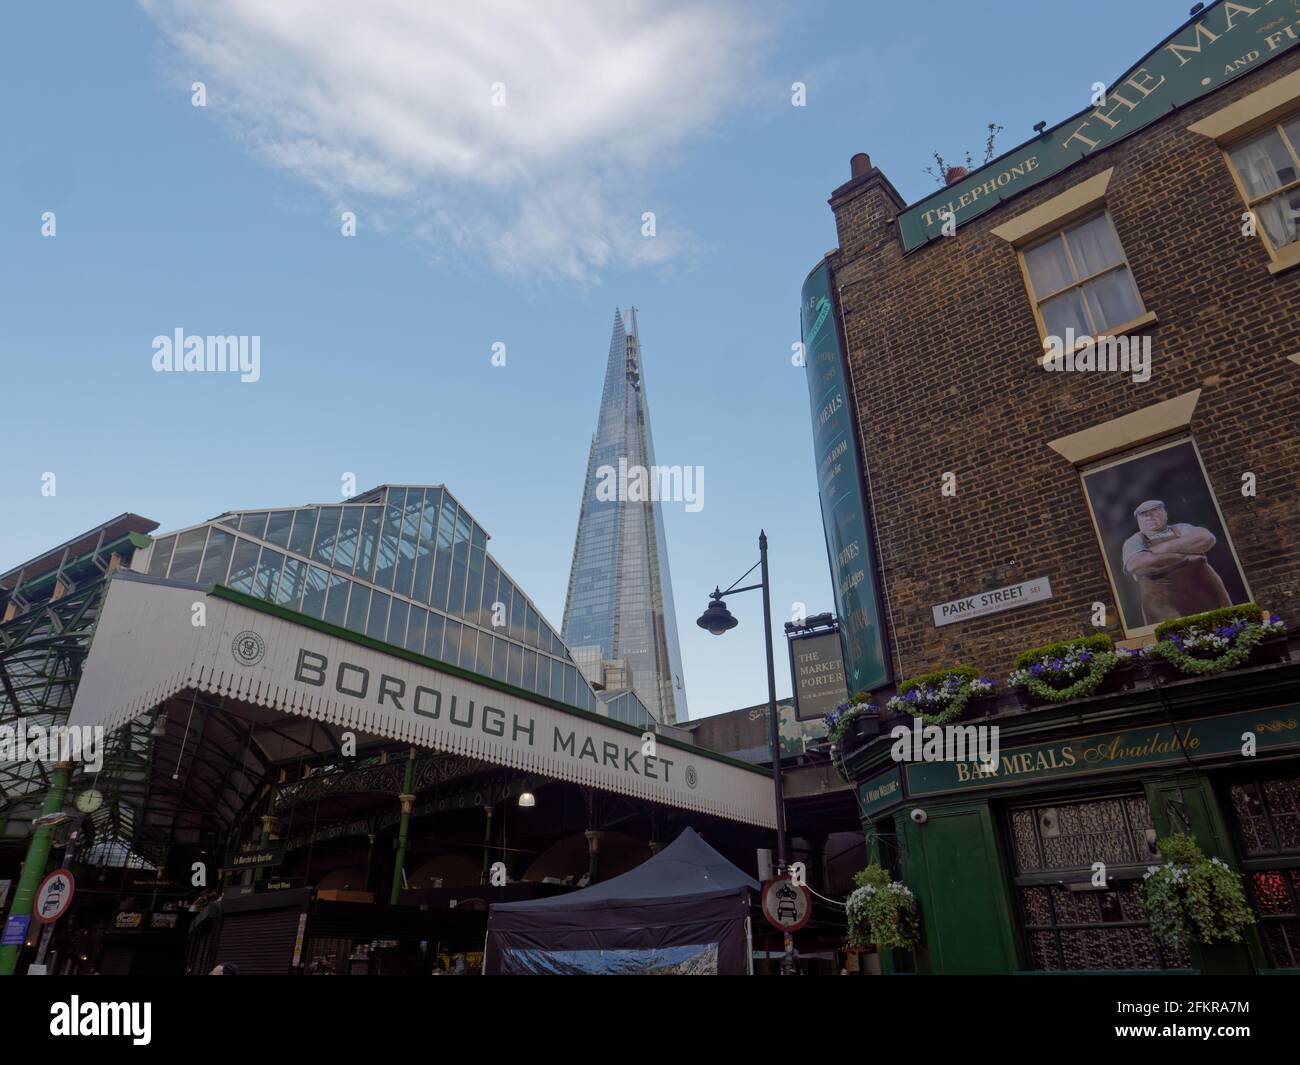 Londra, Greater London, England - Apr 27 2021: Borough Market (un famoso mercato alimentare coperto) con il grattacielo Shard alle spalle. Foto Stock